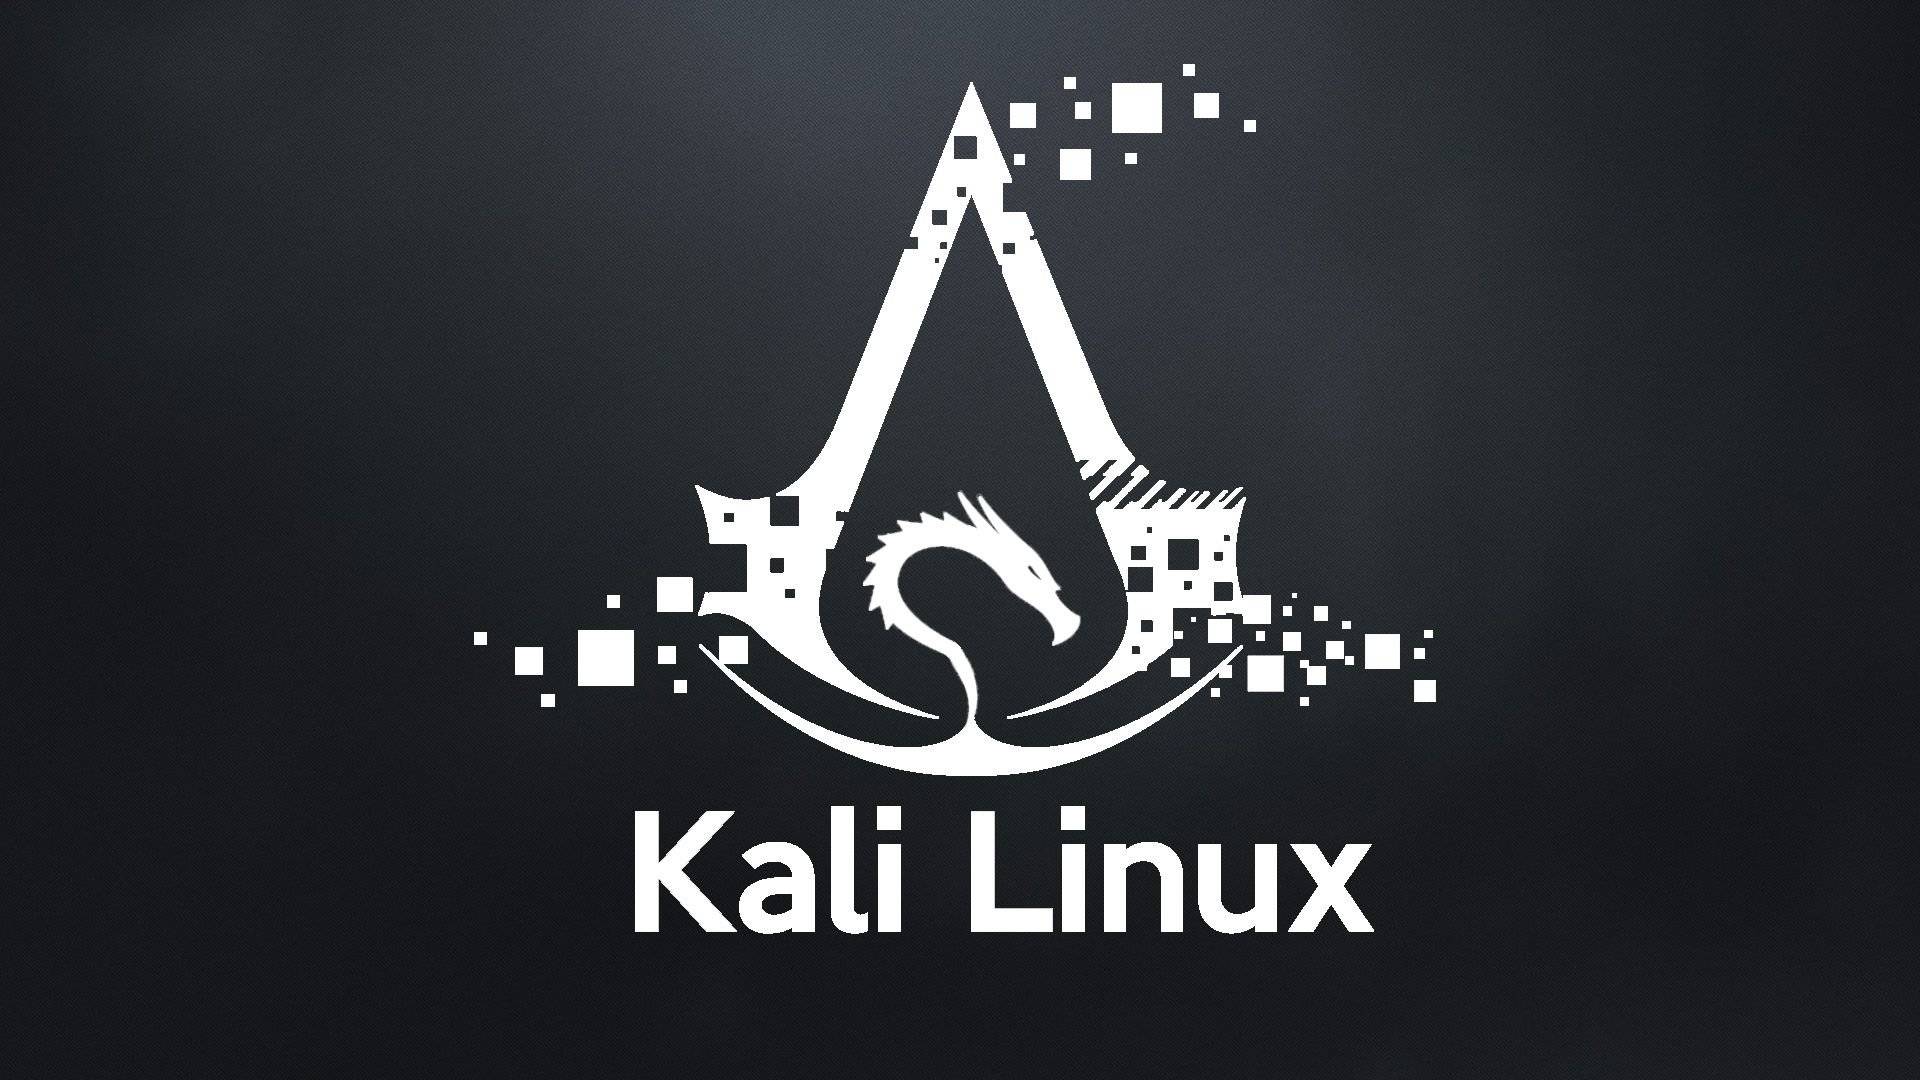 高级Linux企业级运维与Kali安全技术实战 打造强大的网络防御测试能力视频课程